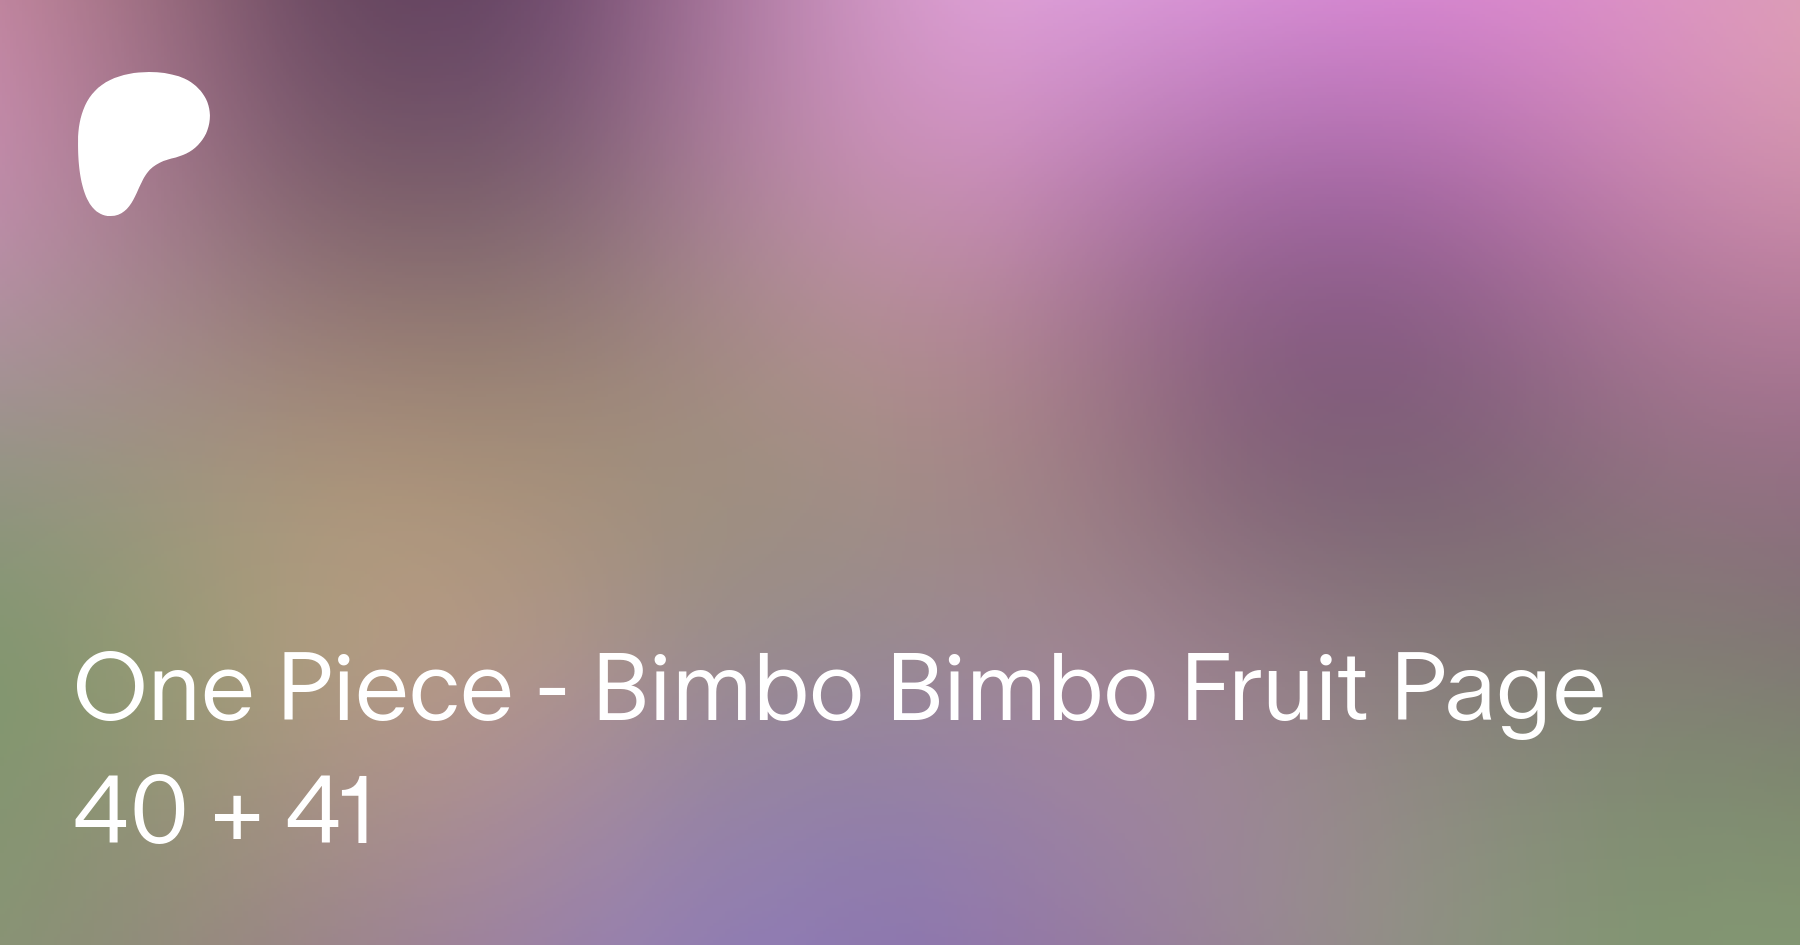 One piece - bimbo bimbo fruit tg